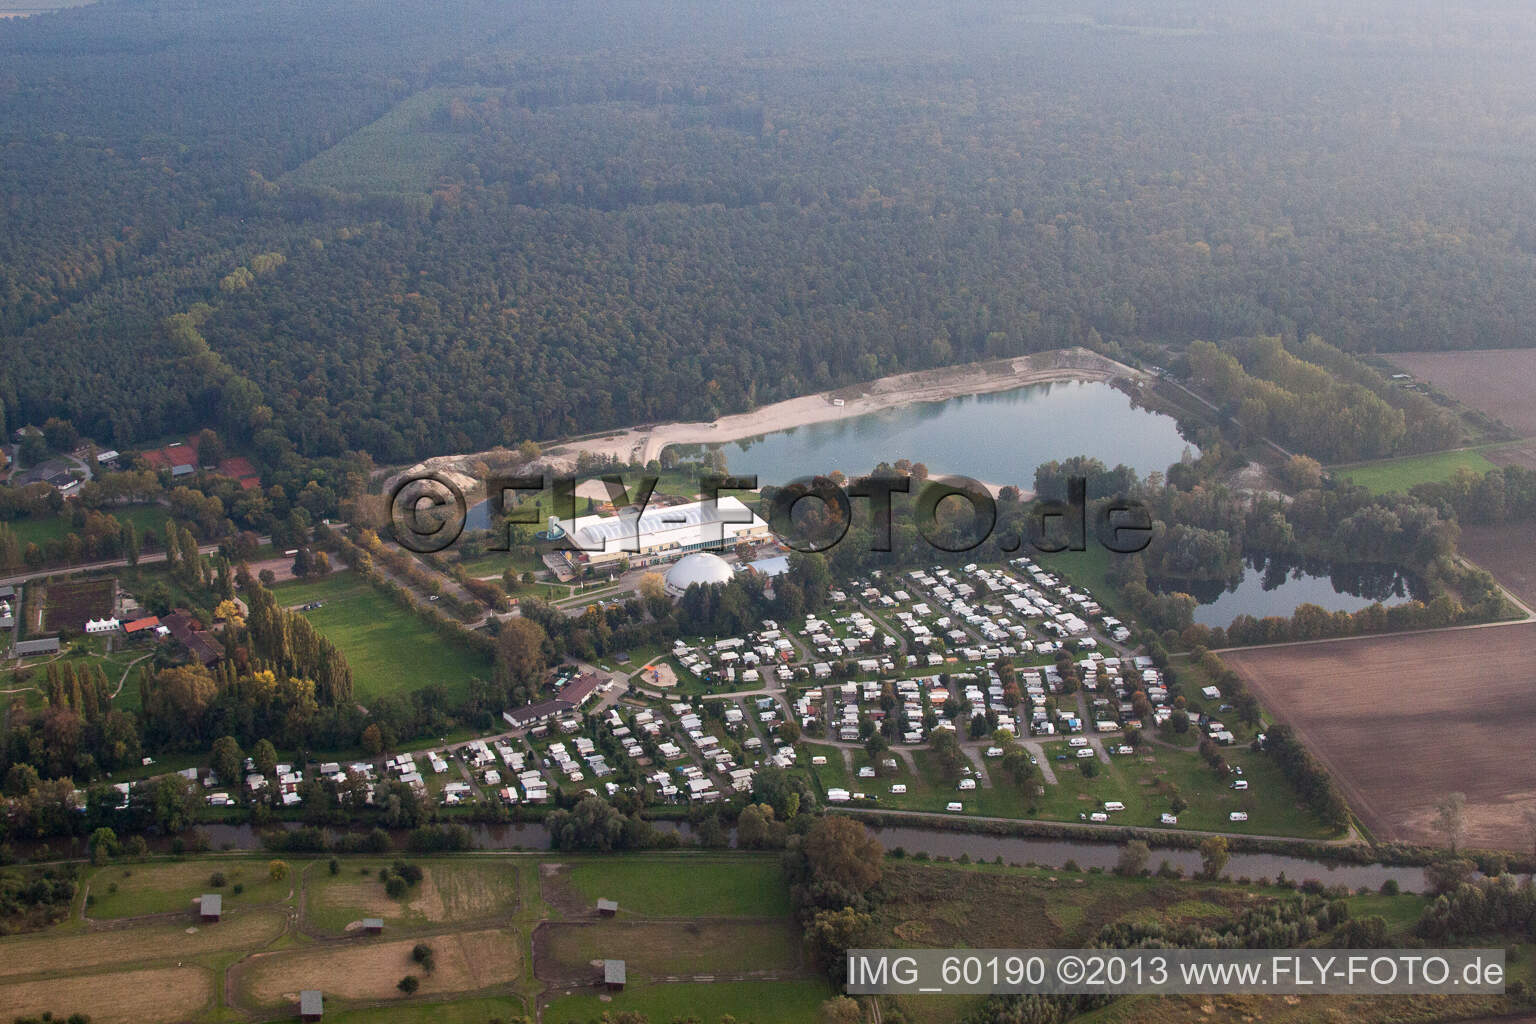 Vue aérienne de Camping à la base de loisirs Moby Dick à Rülzheim dans le département Rhénanie-Palatinat, Allemagne